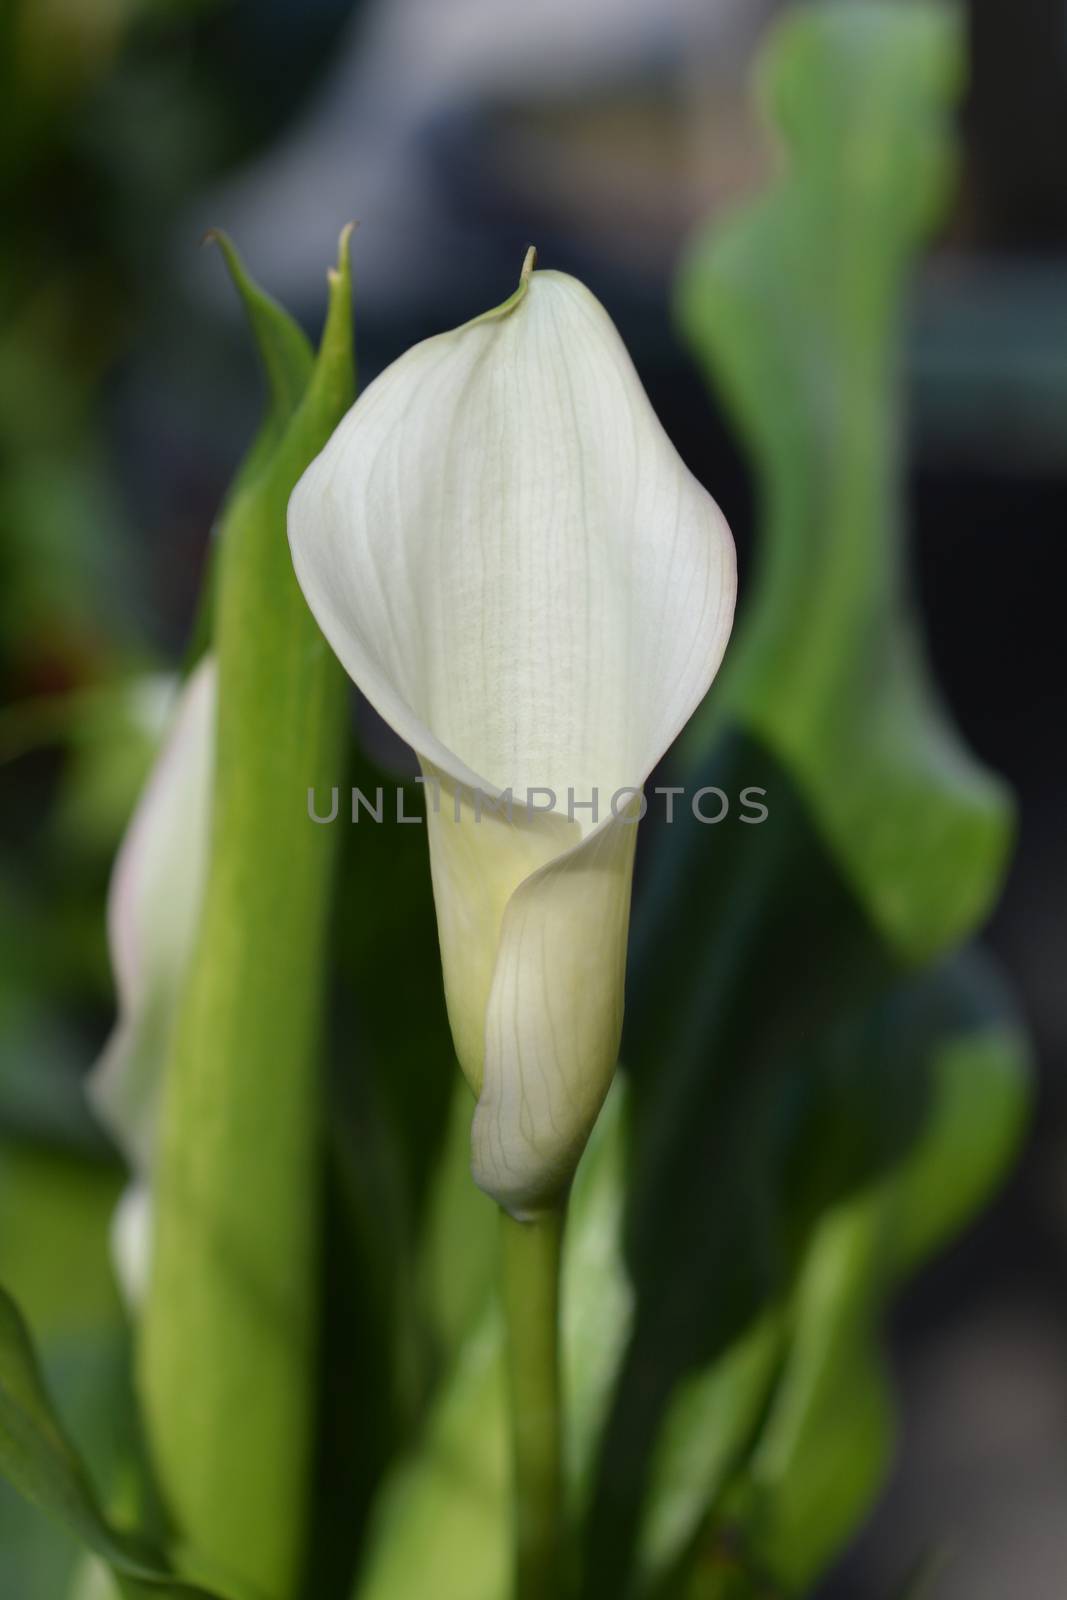 Garden calla lily - Latin name - Zantedeschia aethiopica